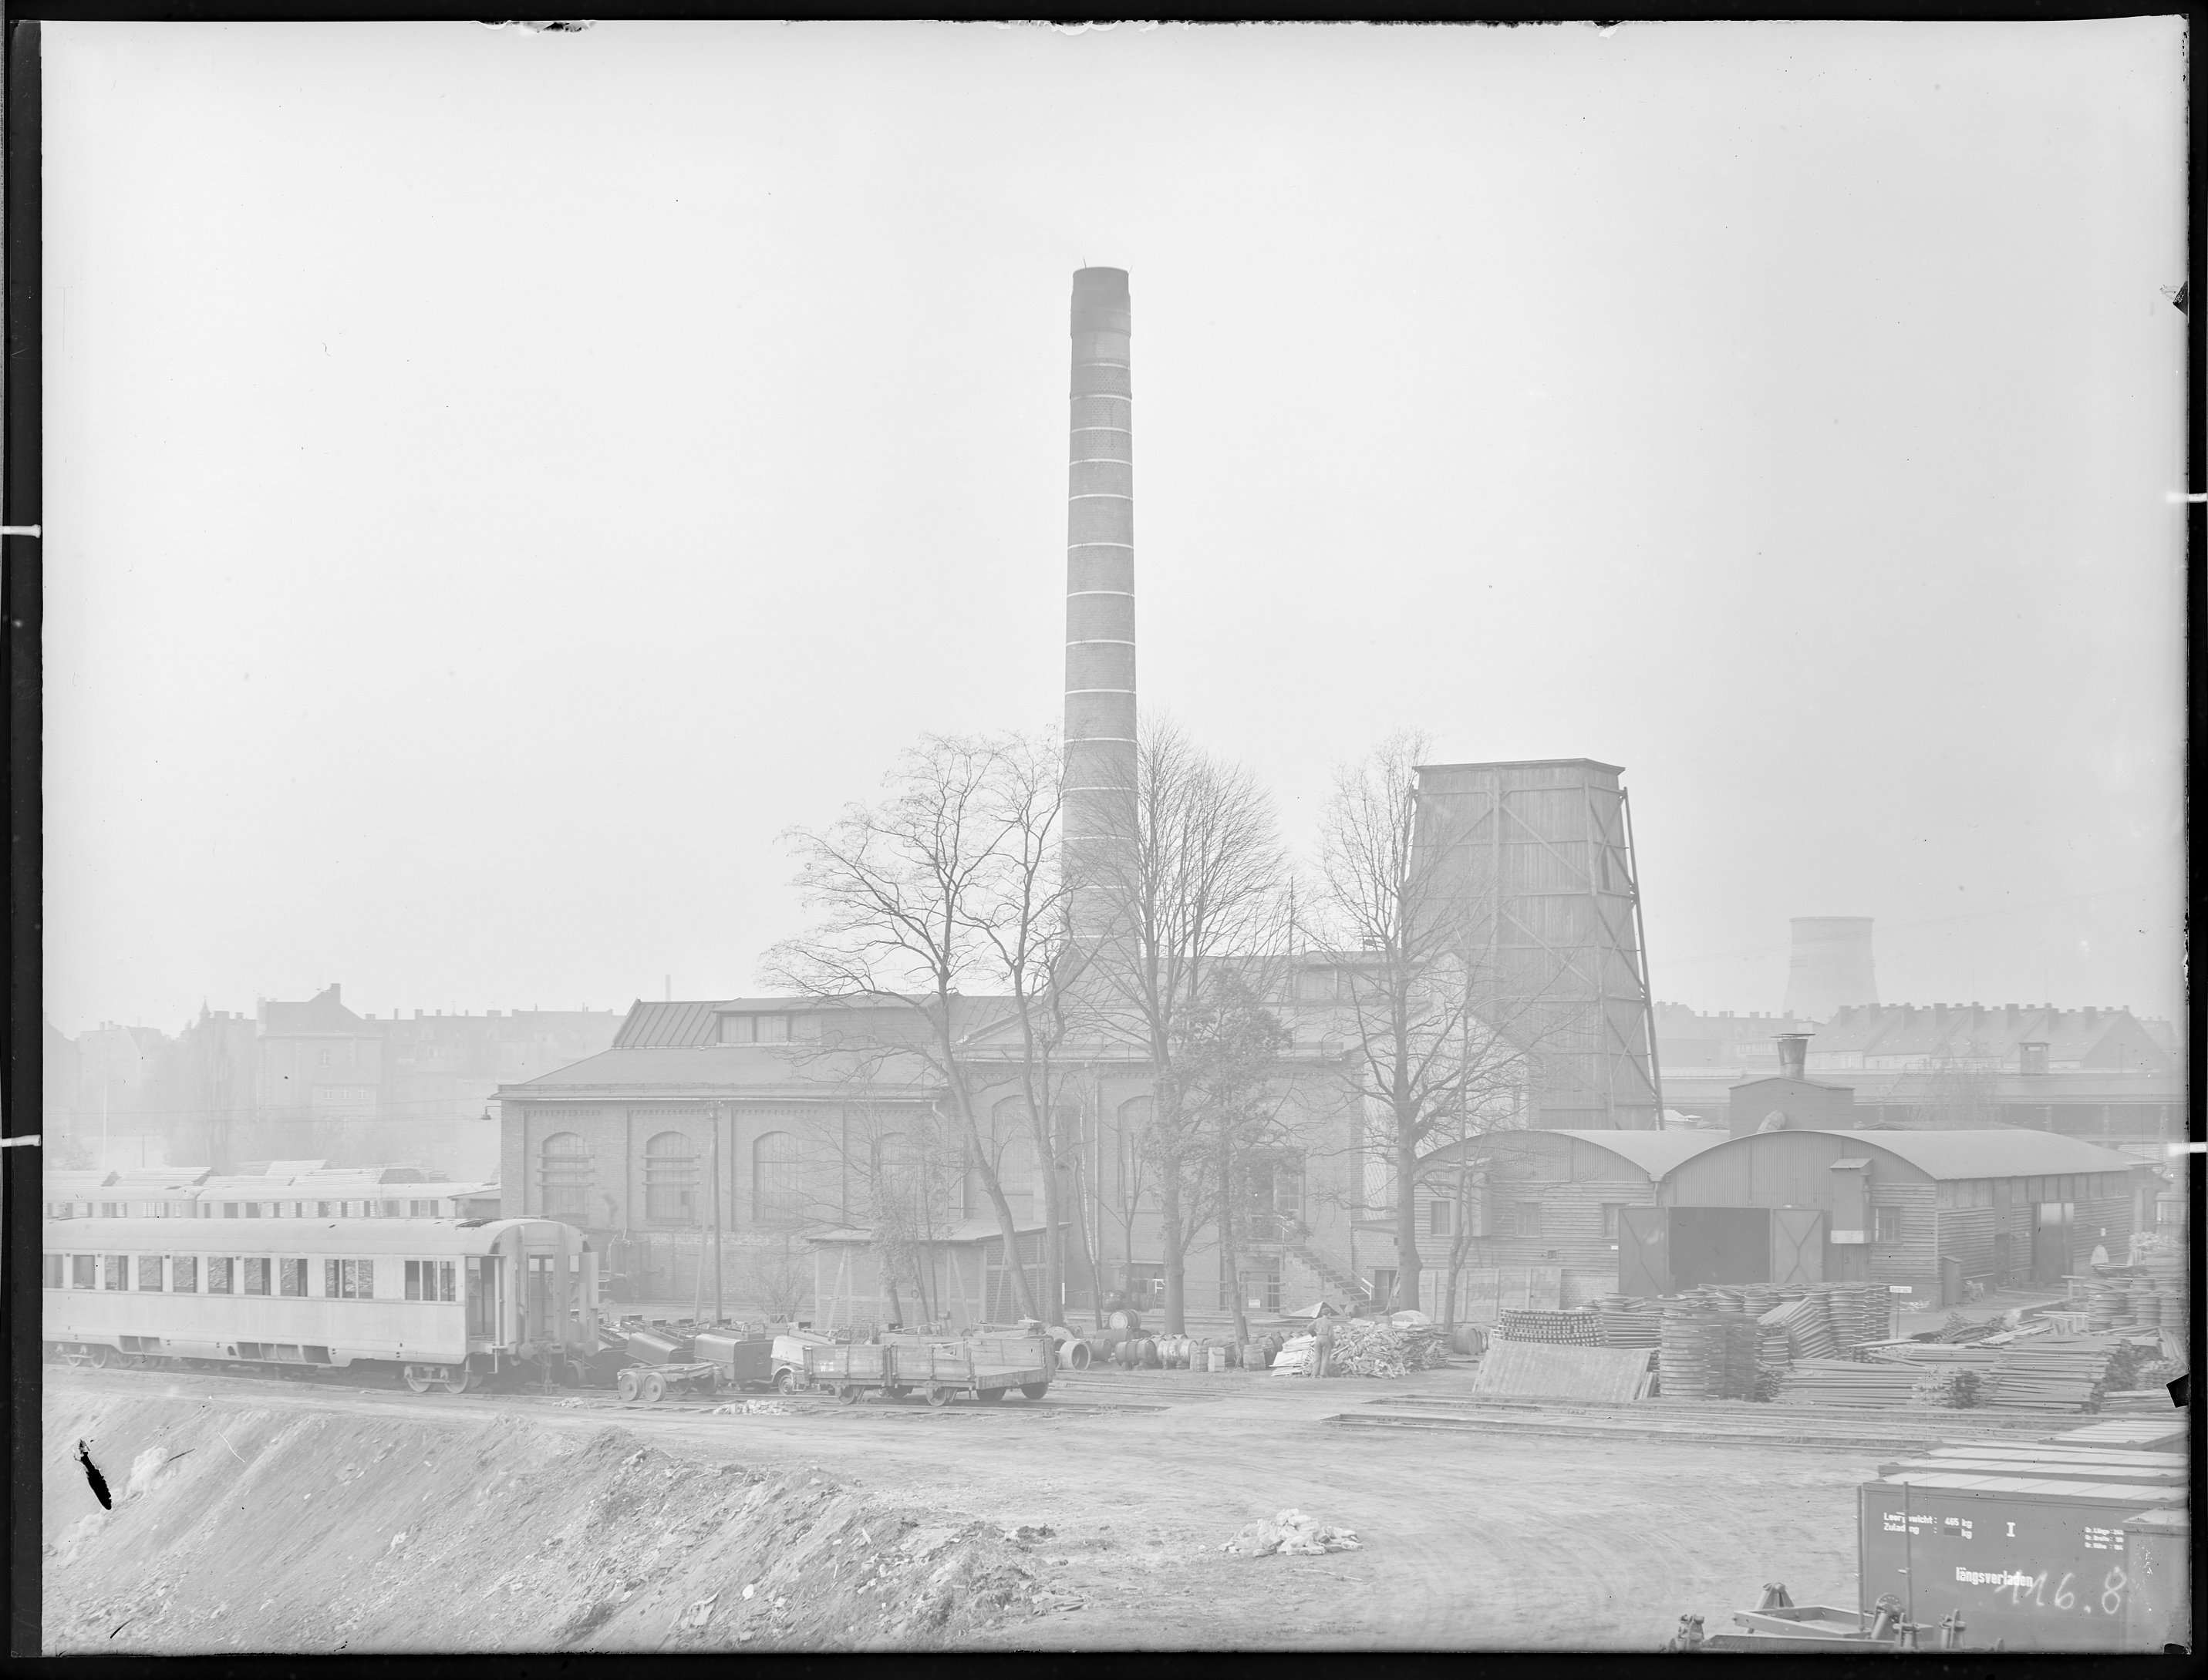 Fotografie: Waggon- und Maschinenbau AG Görlitz, Werk II (Außenansicht), Kraftwerk vom Ponteteich aus gesehen, um 1940? (Verkehrsmuseum Dresden CC BY-NC-SA)